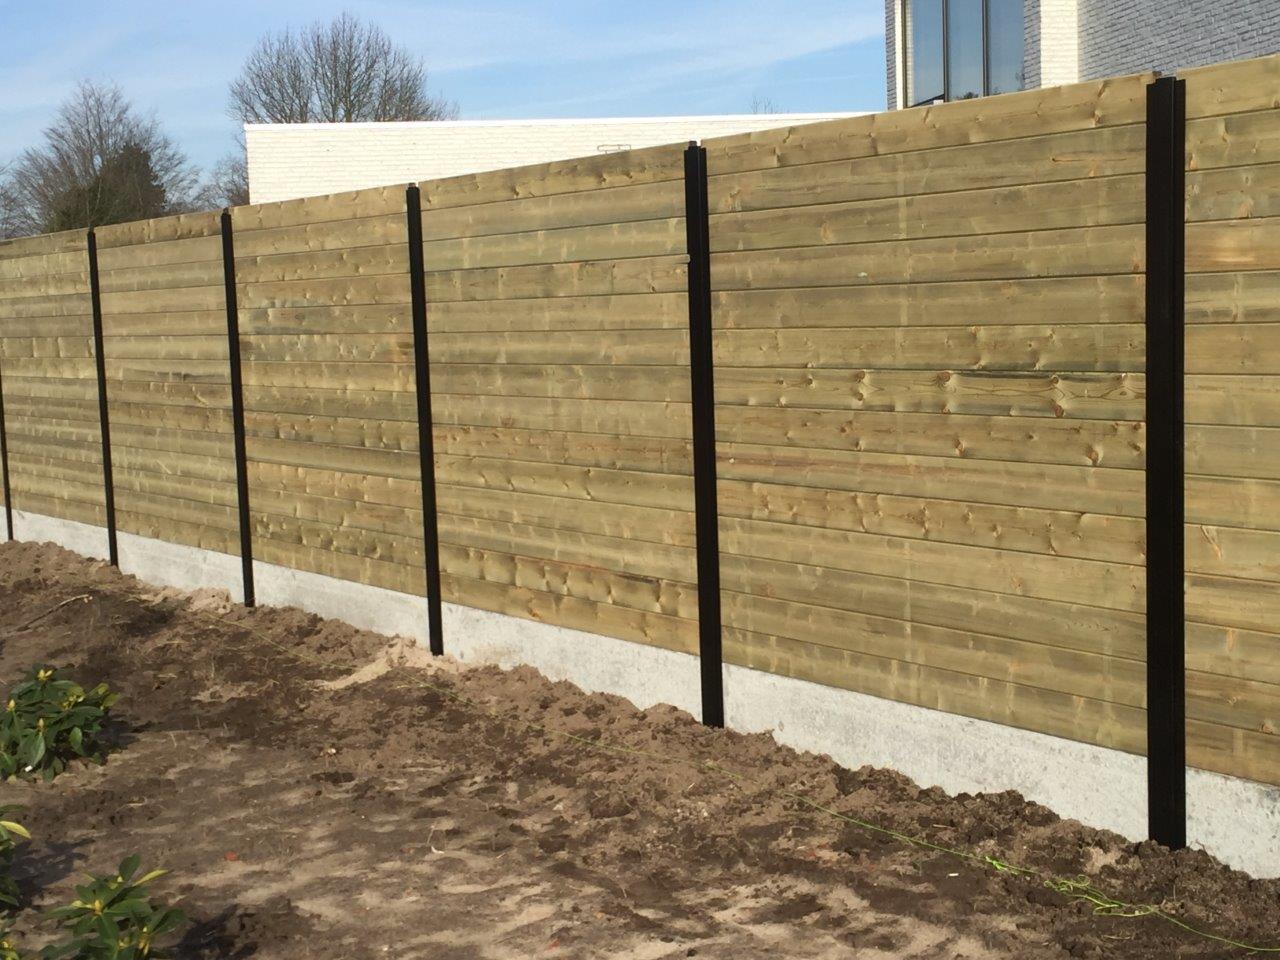 Tand groef panelen geplaatst tussen metalen palen met onderaan een betonplaat